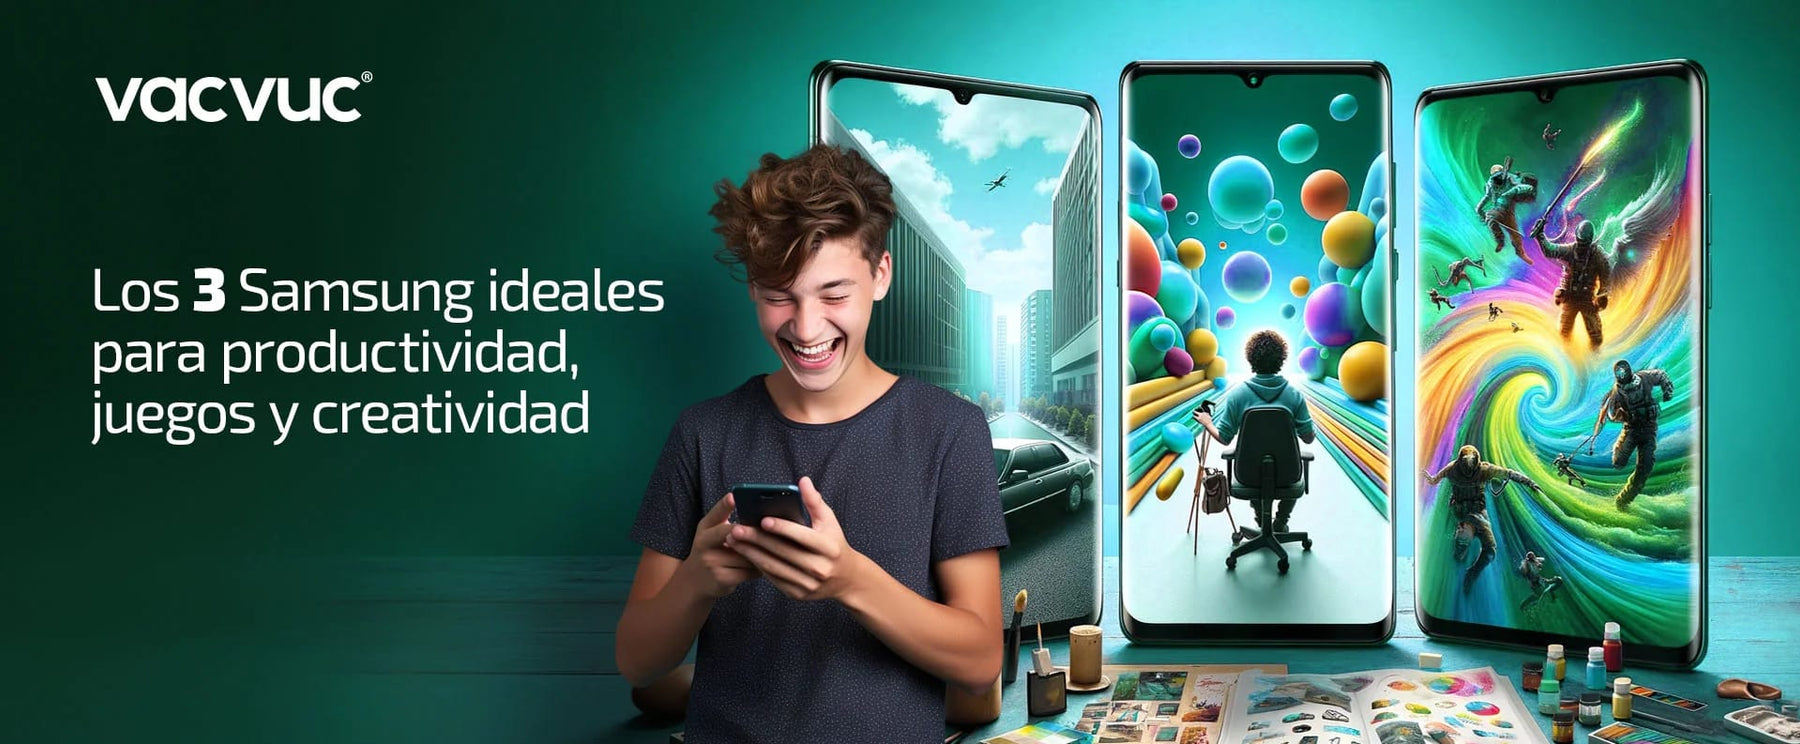 Los 3 Samsung ideales para productividad, juegos y creativida